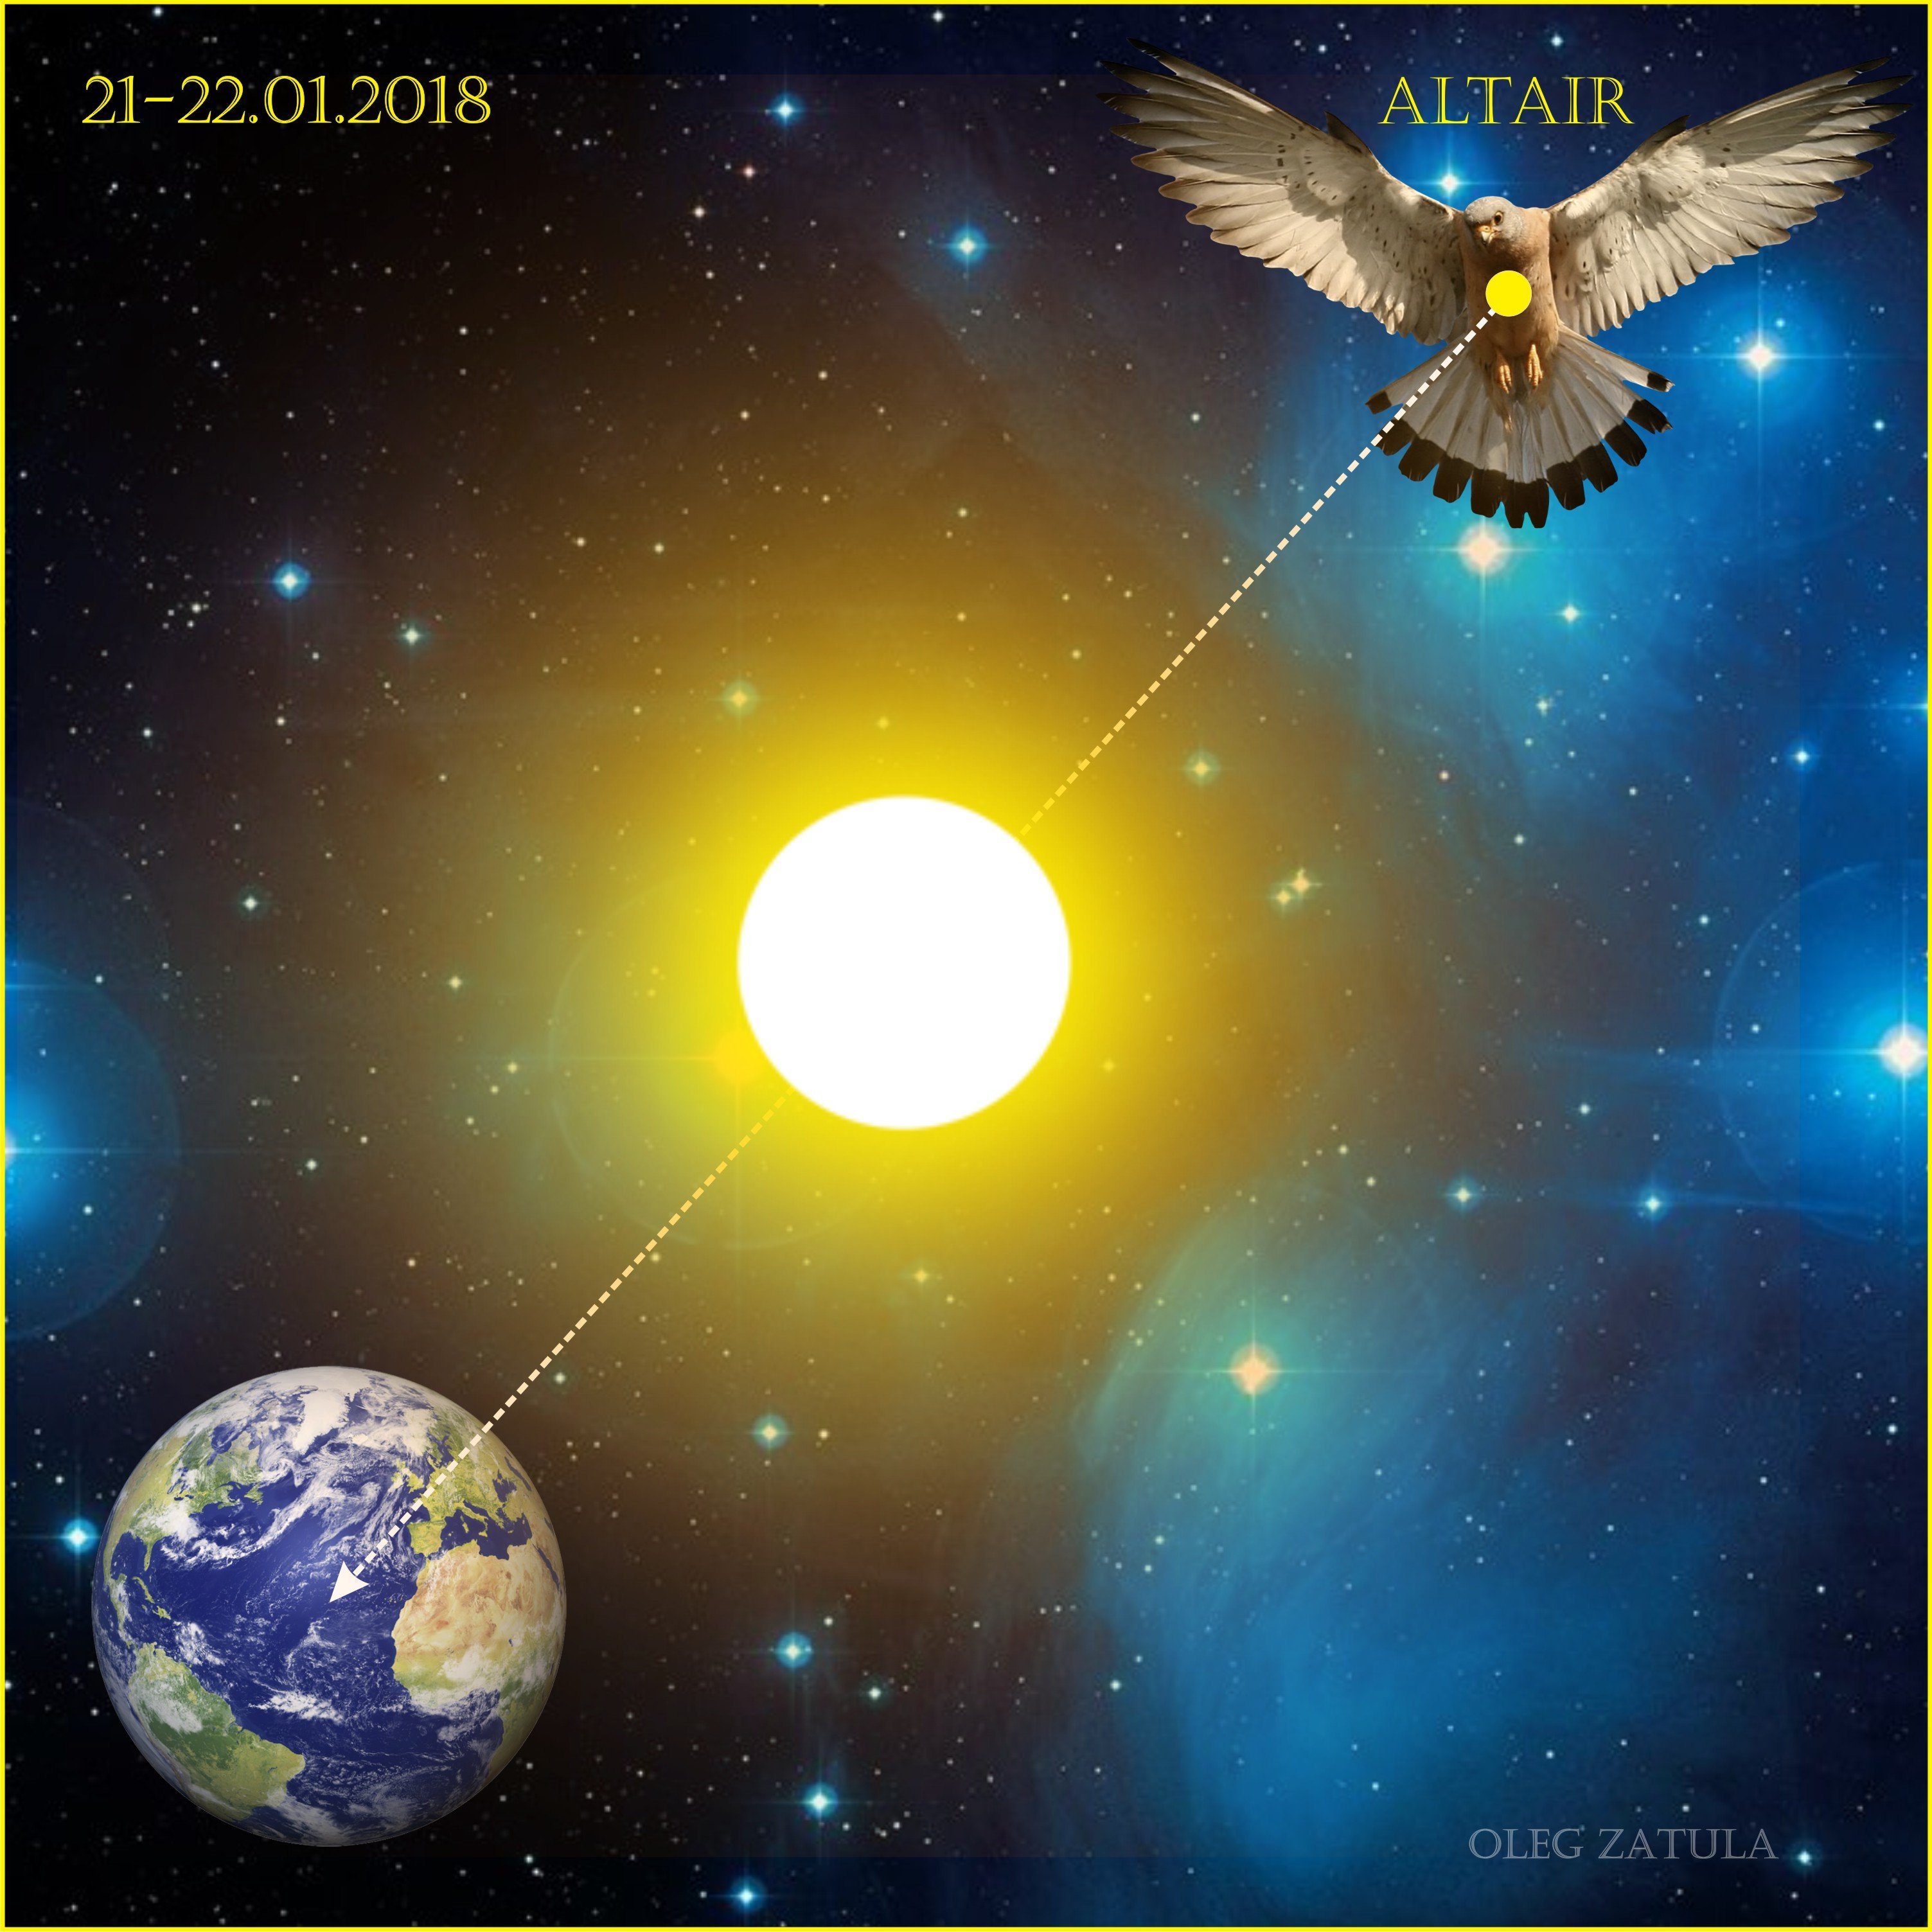 Самое яркое созвездие орла. Альтаир Созвездие орла. Звезда Альтаир в созвездии орла. Созвездие парящего орла. Орел со звездой.